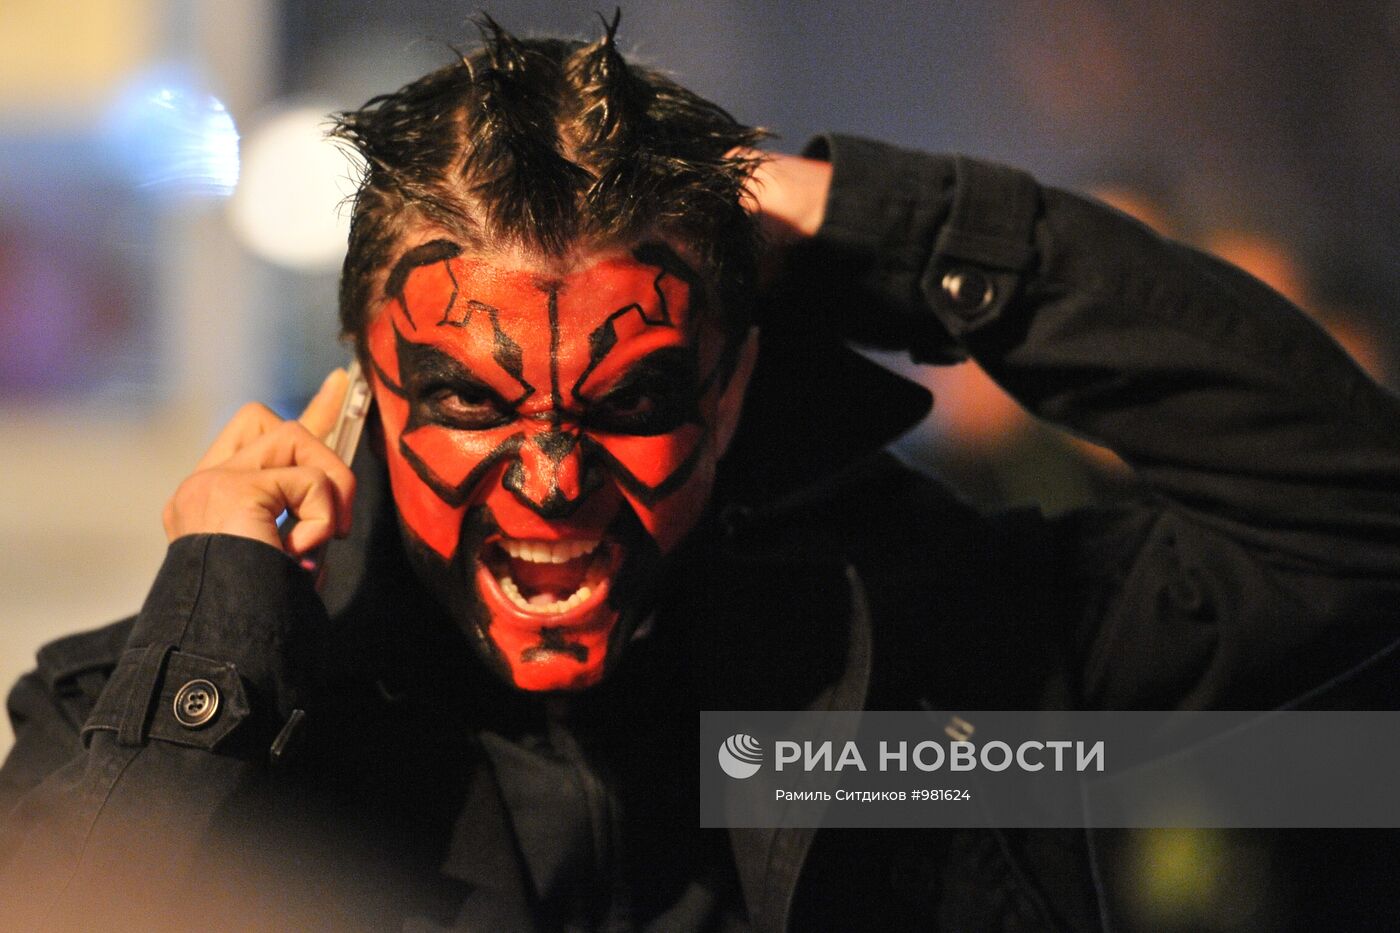 Празднование "Хэллоуина" в Москве